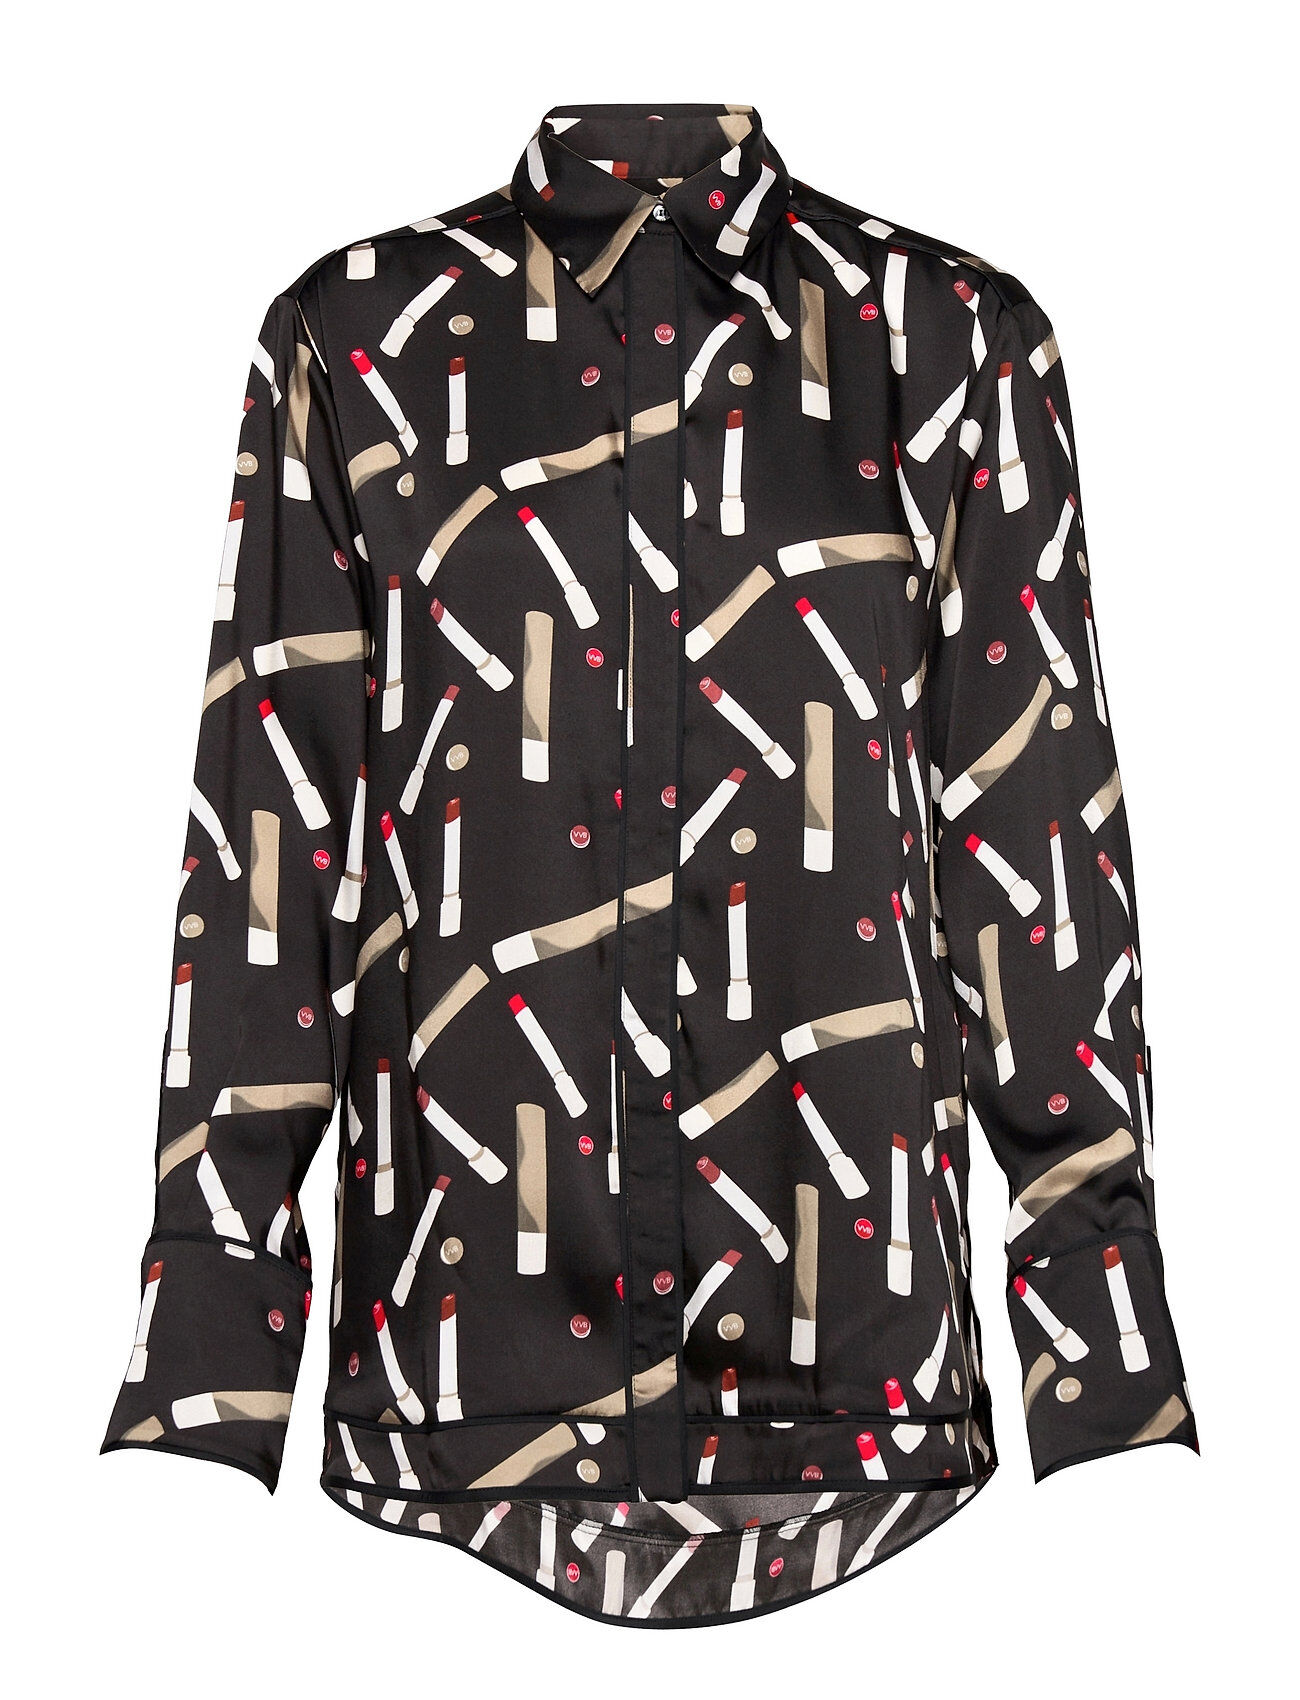 Victoria Beckham Piping Detail Shirt Langermet Skjorte Multi/mønstret Victoria Beckham